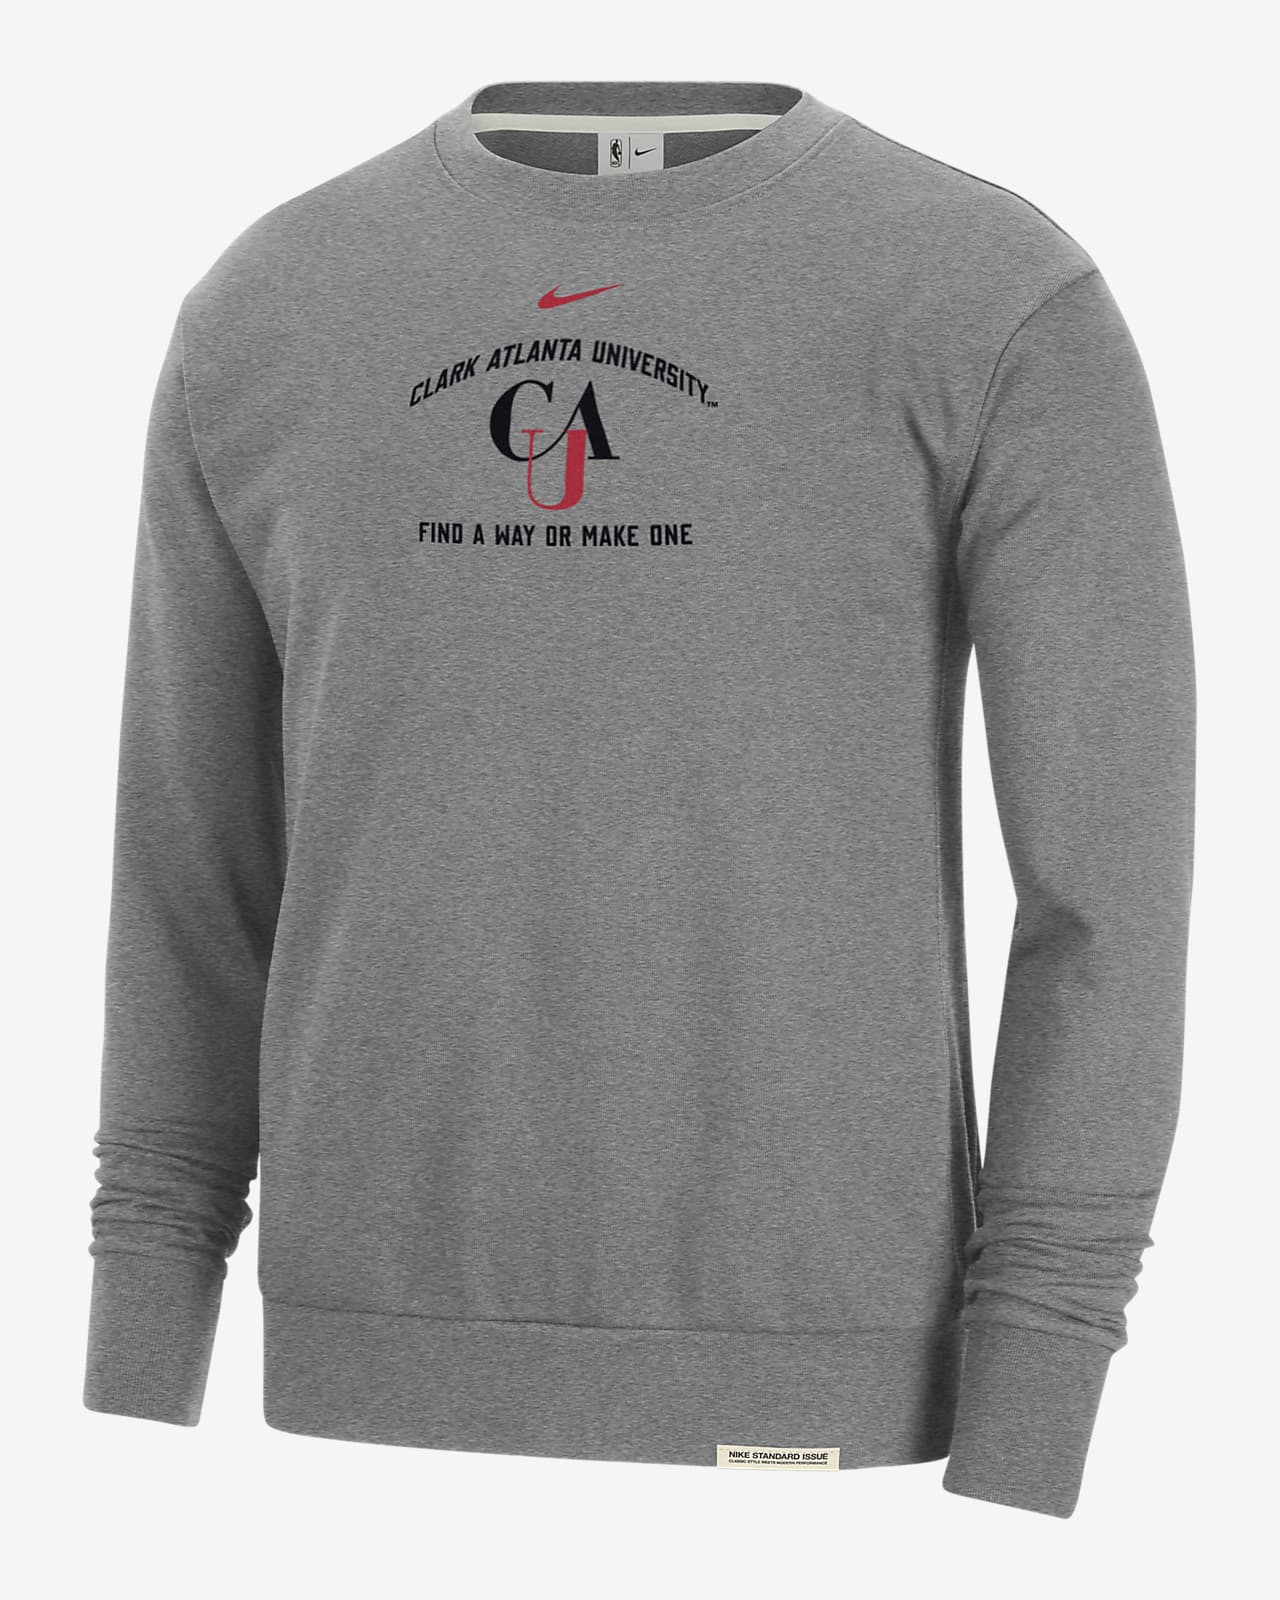 Clark Atlanta Standard Issue Men's Nike College Fleece Crew-Neck Sweatshirt